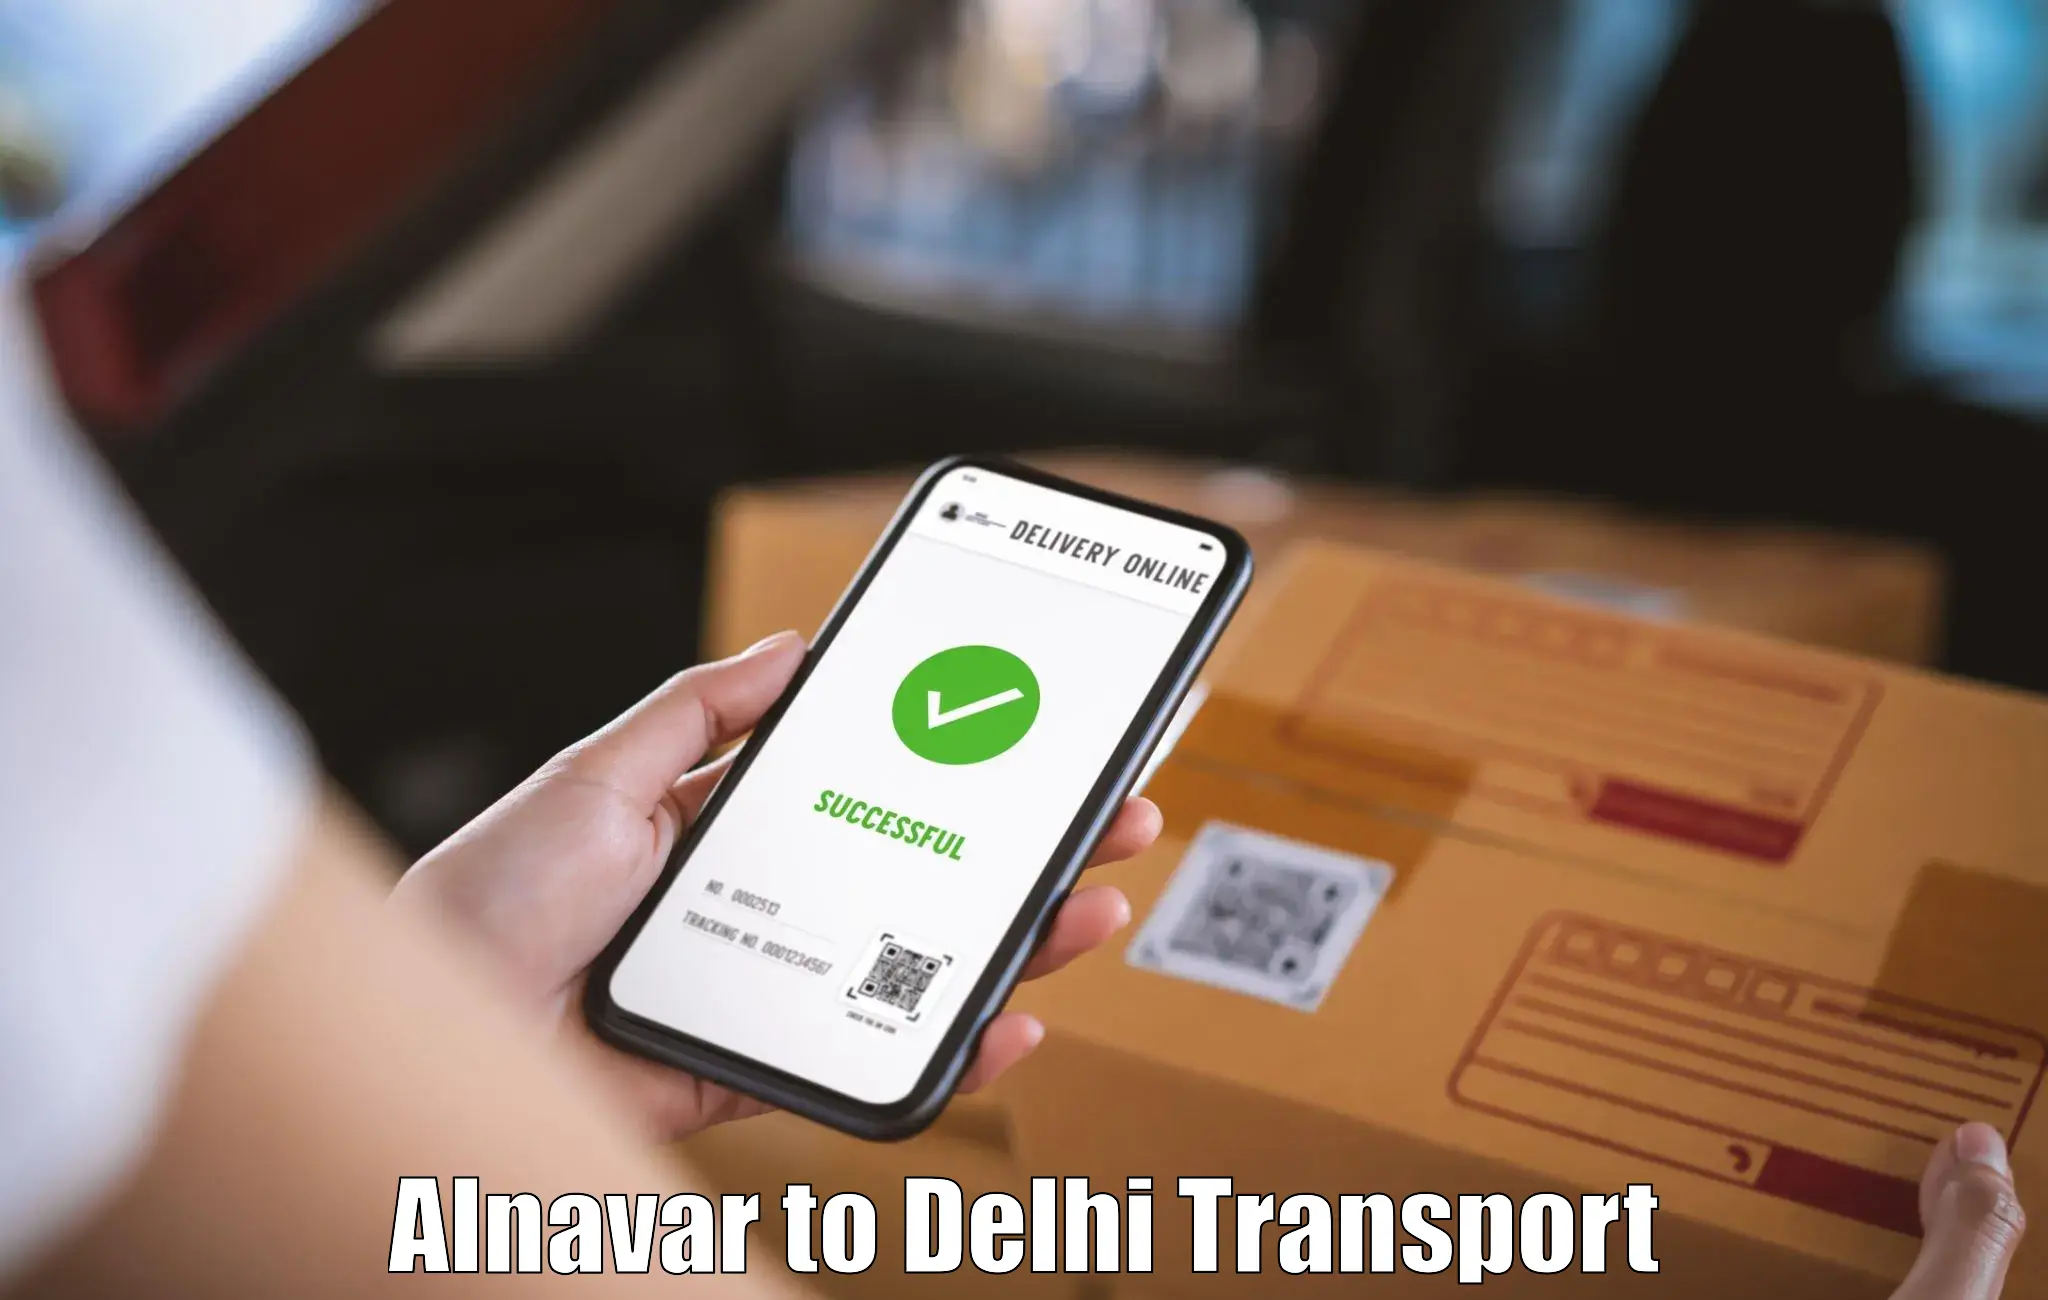 Intercity transport Alnavar to Delhi